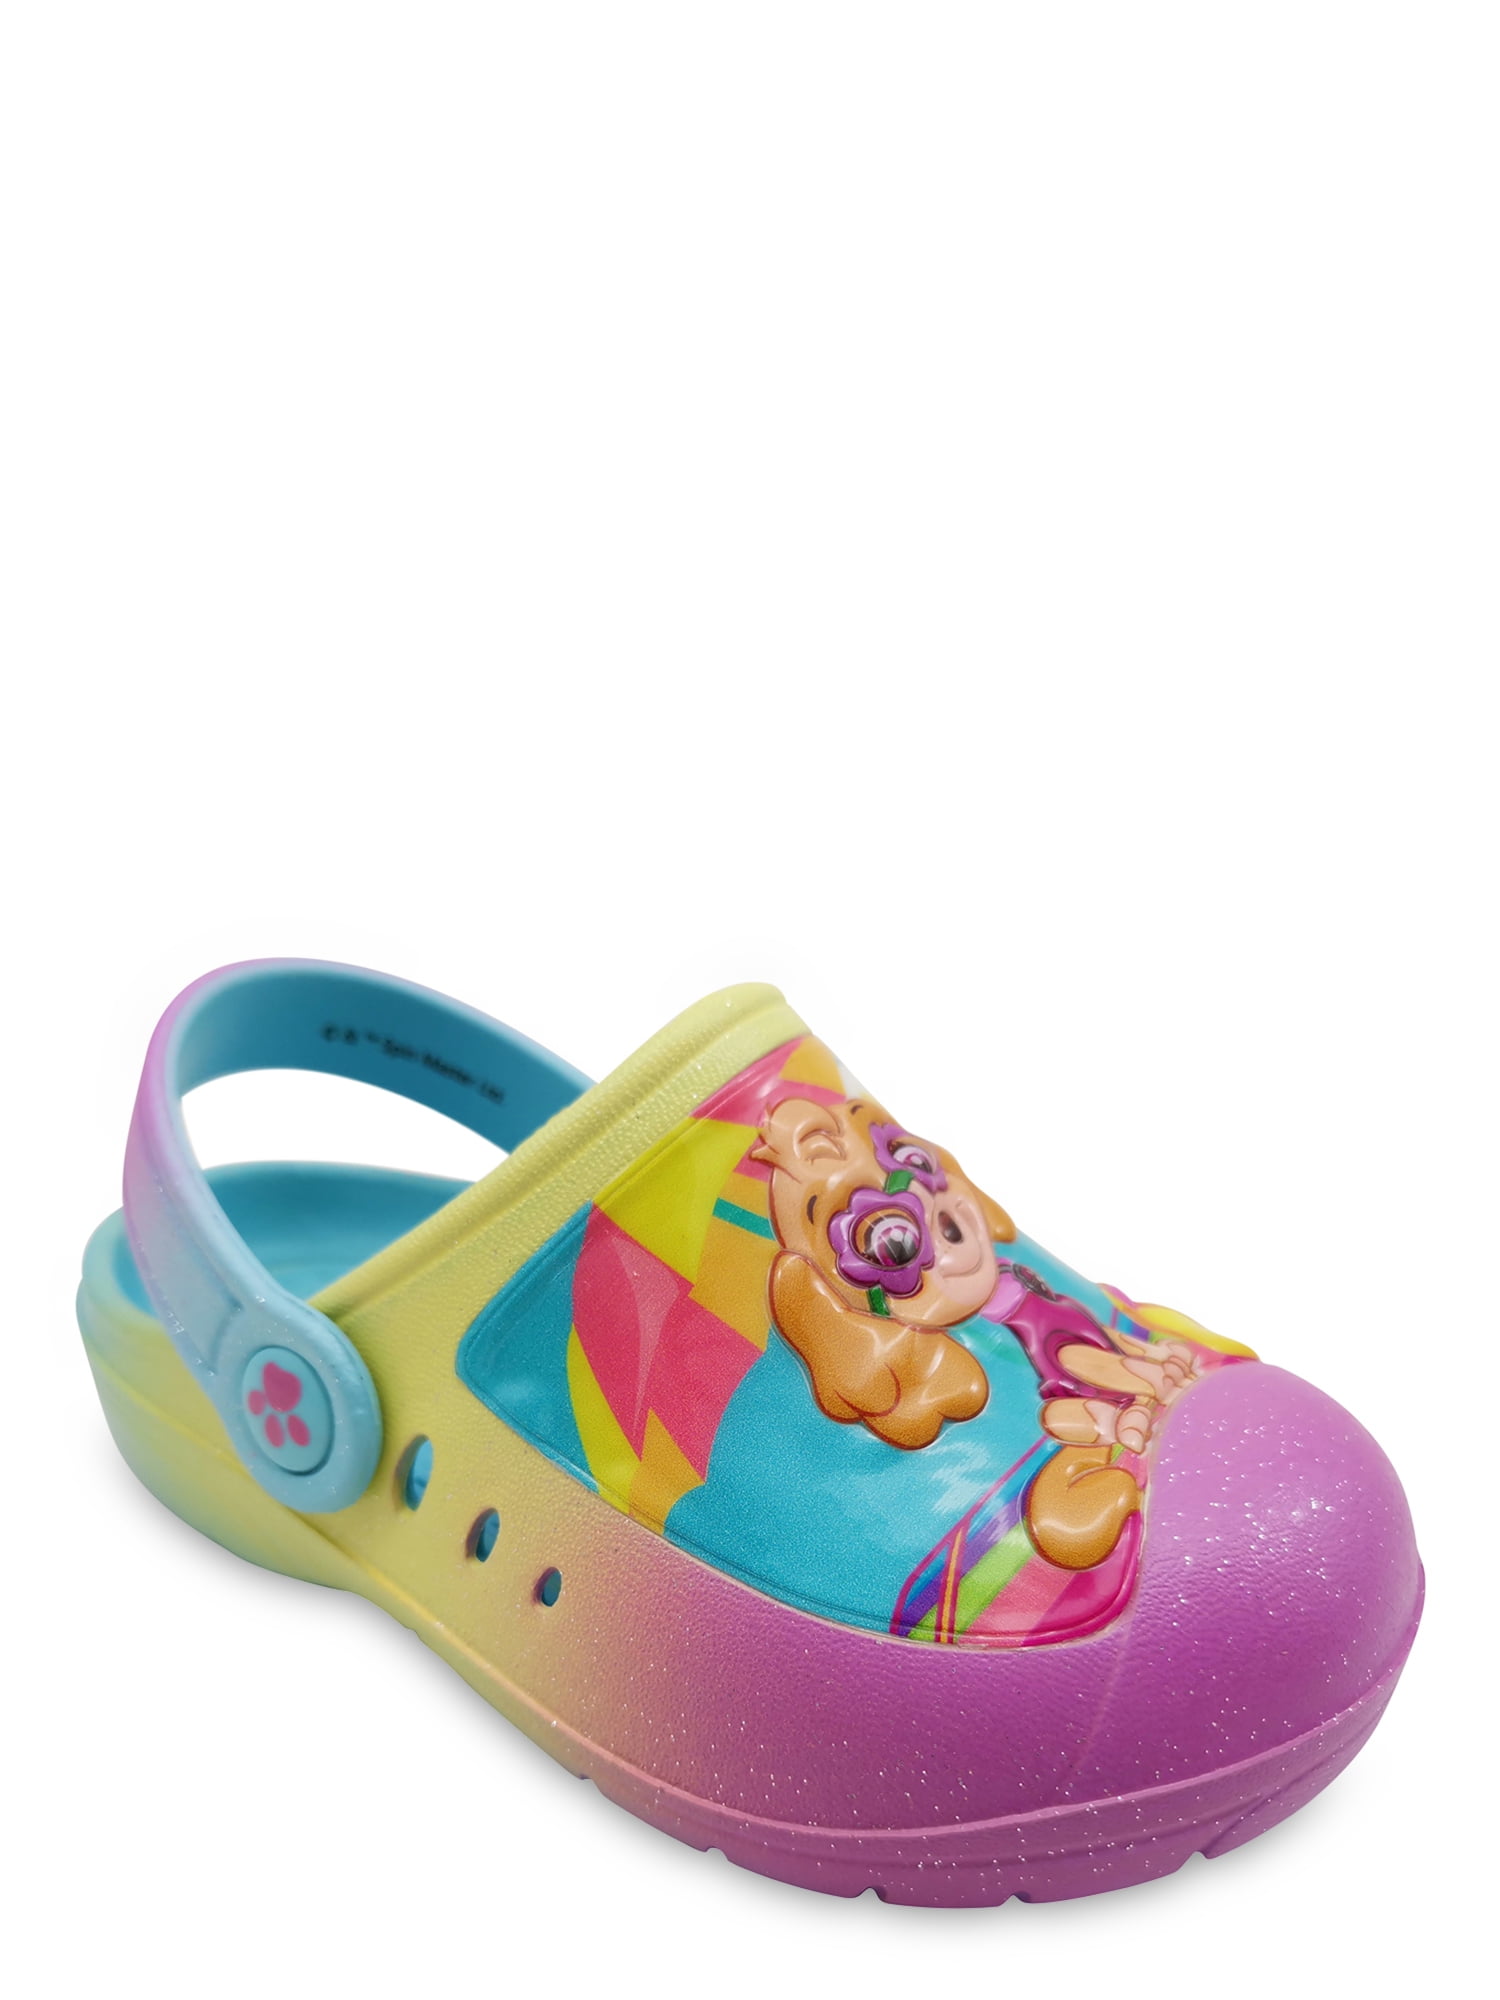 Nickelodeon Paw Patrol Skye & Everest Clog Shoe (Toddler Girls) - Walmart.com